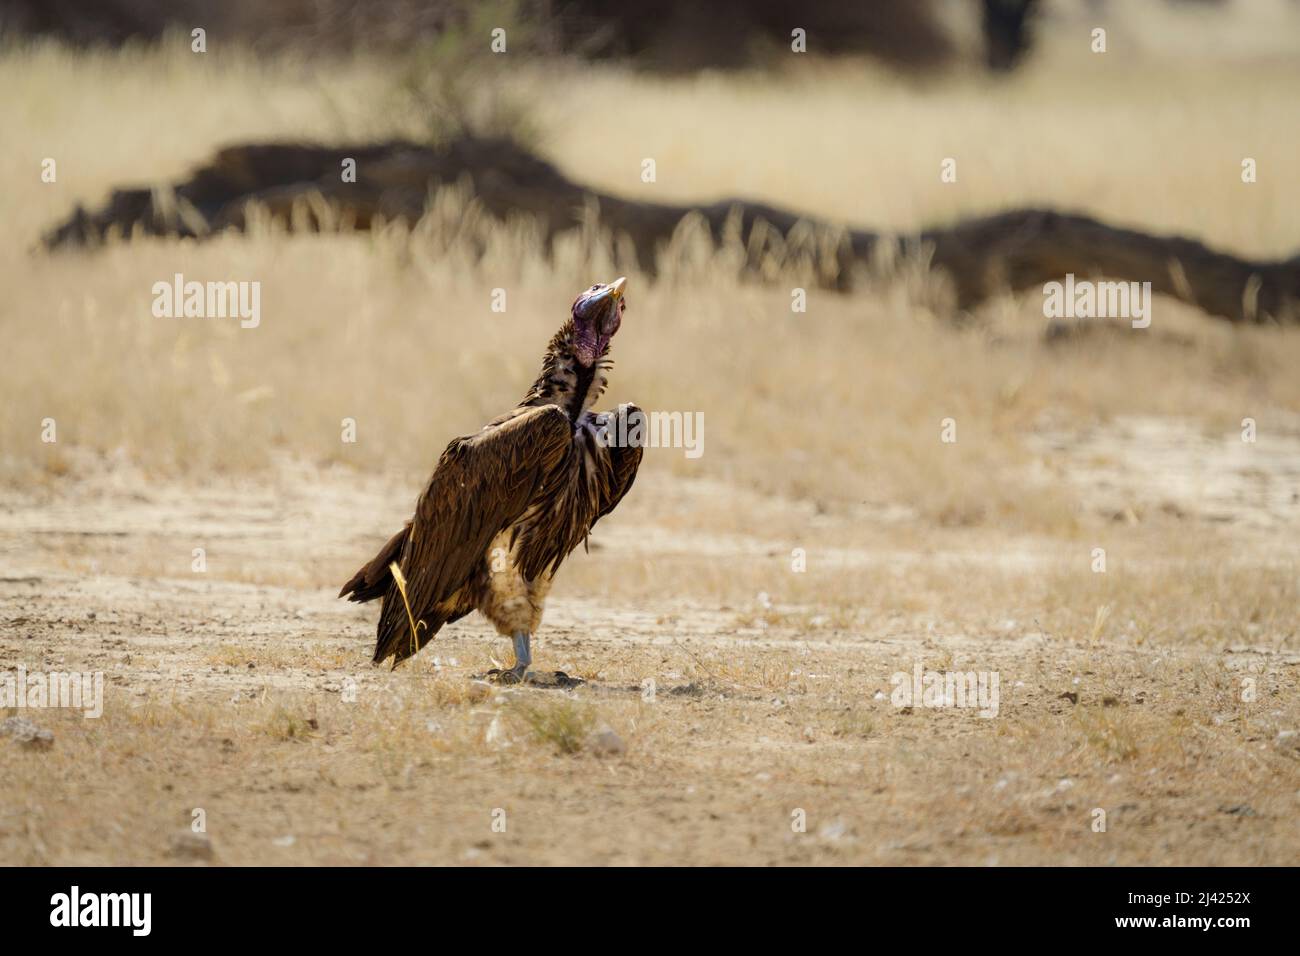 Le vautour à Lappet, le vautour du léopard (Torgos tracheliotos) est au sol. Kalahari, parc national de Kgalagadi, Afrique du Sud Banque D'Images